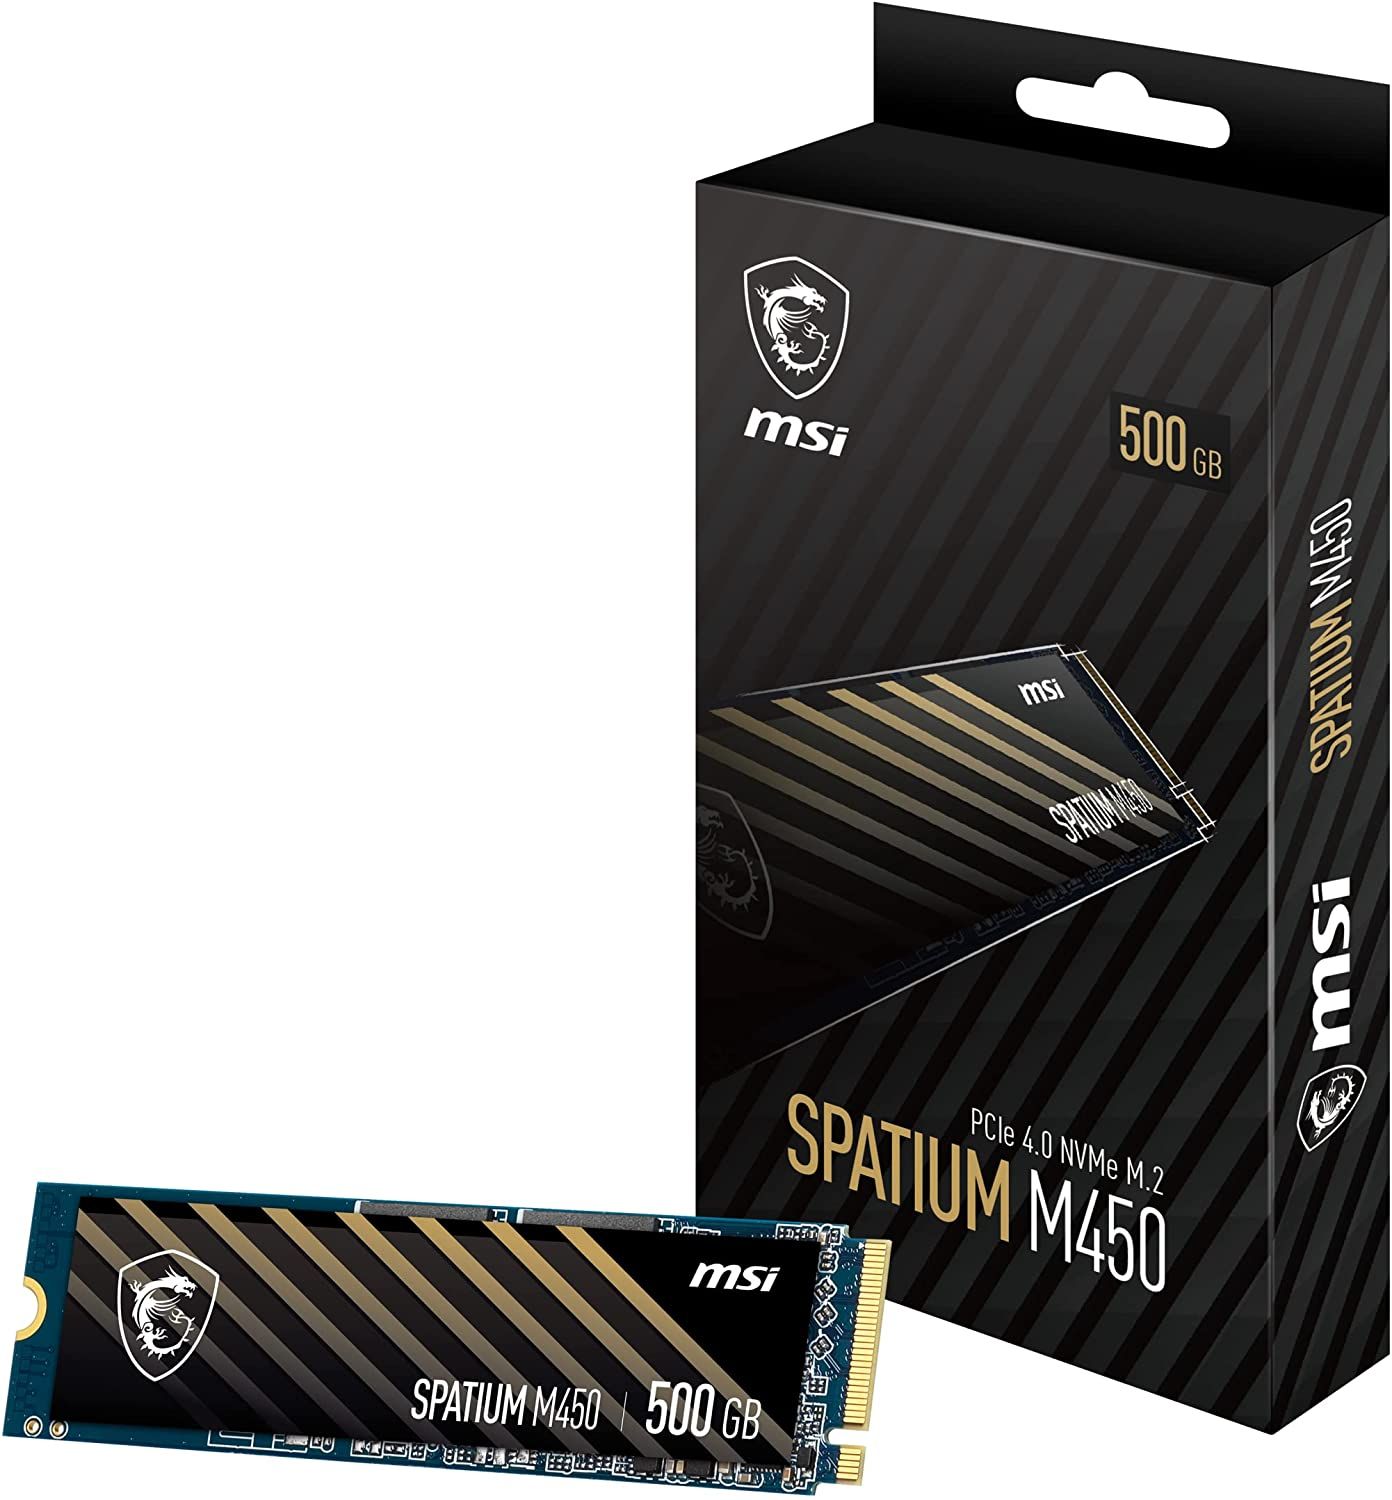 MSI SPATIUM M450 PCIe 4.0 NVMe M.2 500GB PCI Express 4.0 3D NAND_1